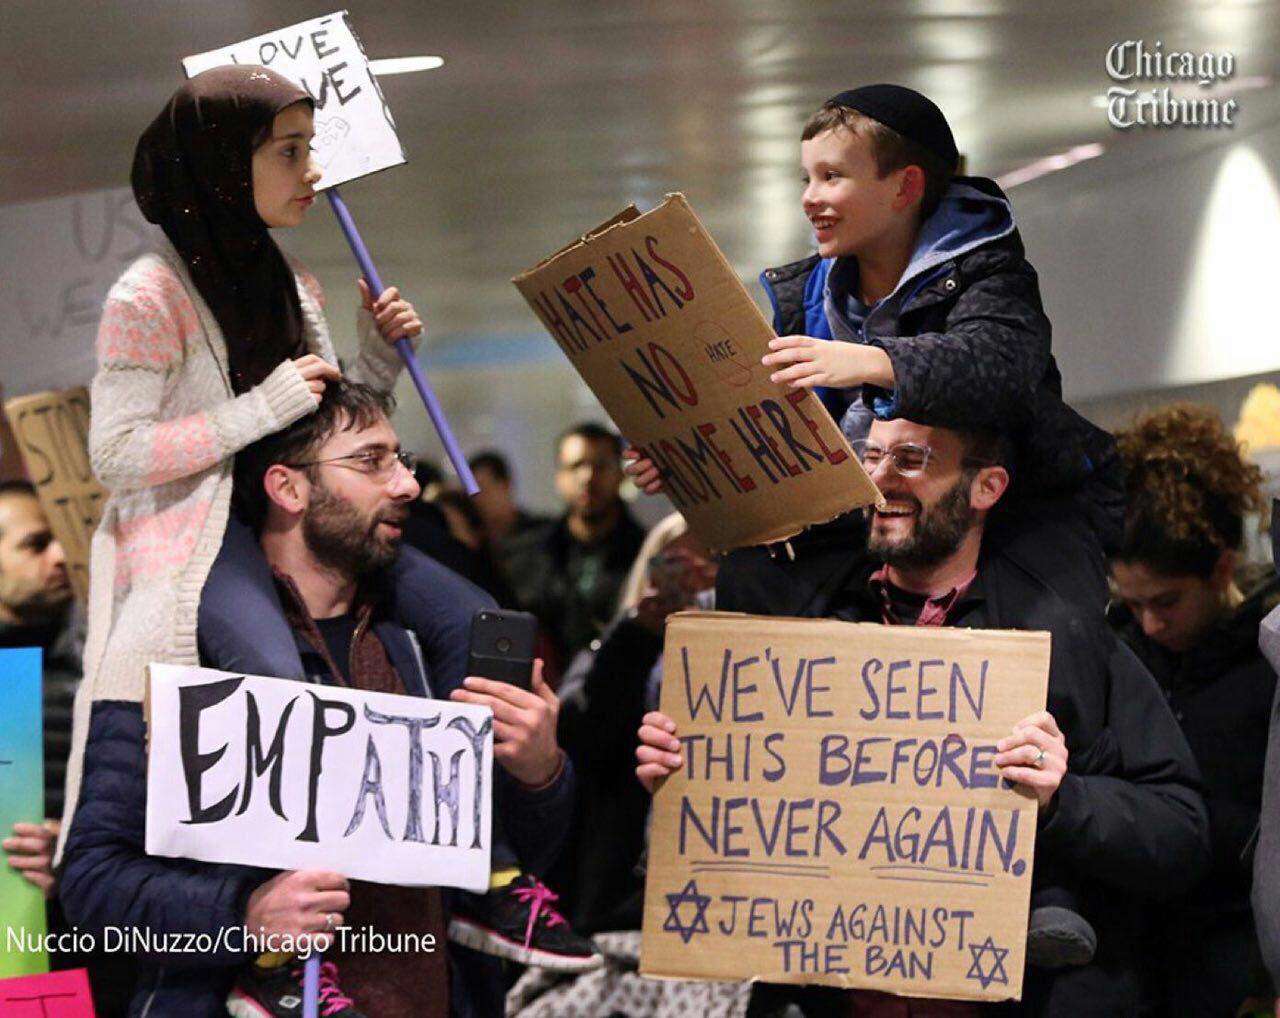 یک خانواده یهودی و مسلمان در فرودگاه های آمریکا  در حال اعتراض به ترامپ هستند